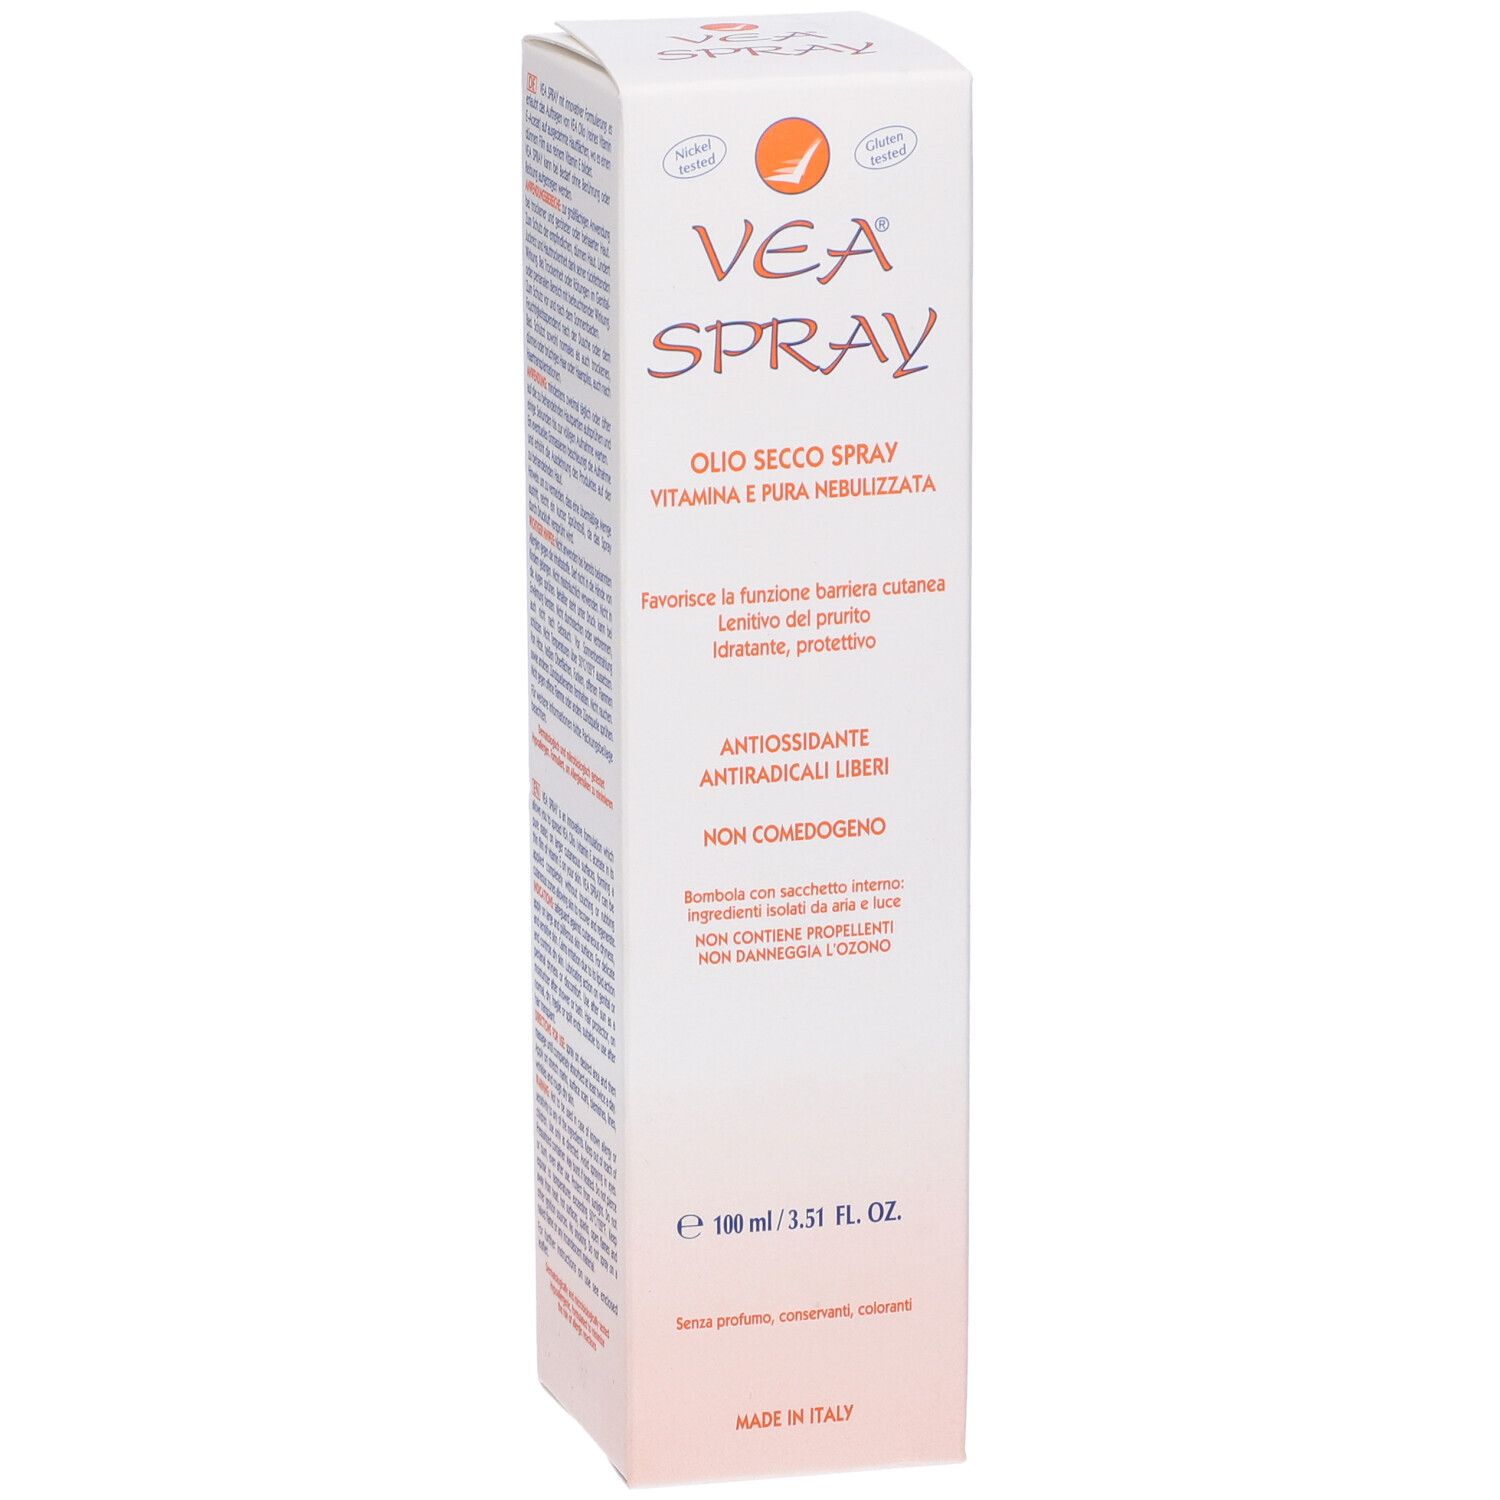 VEA® Olio Secco Spray 100 ml